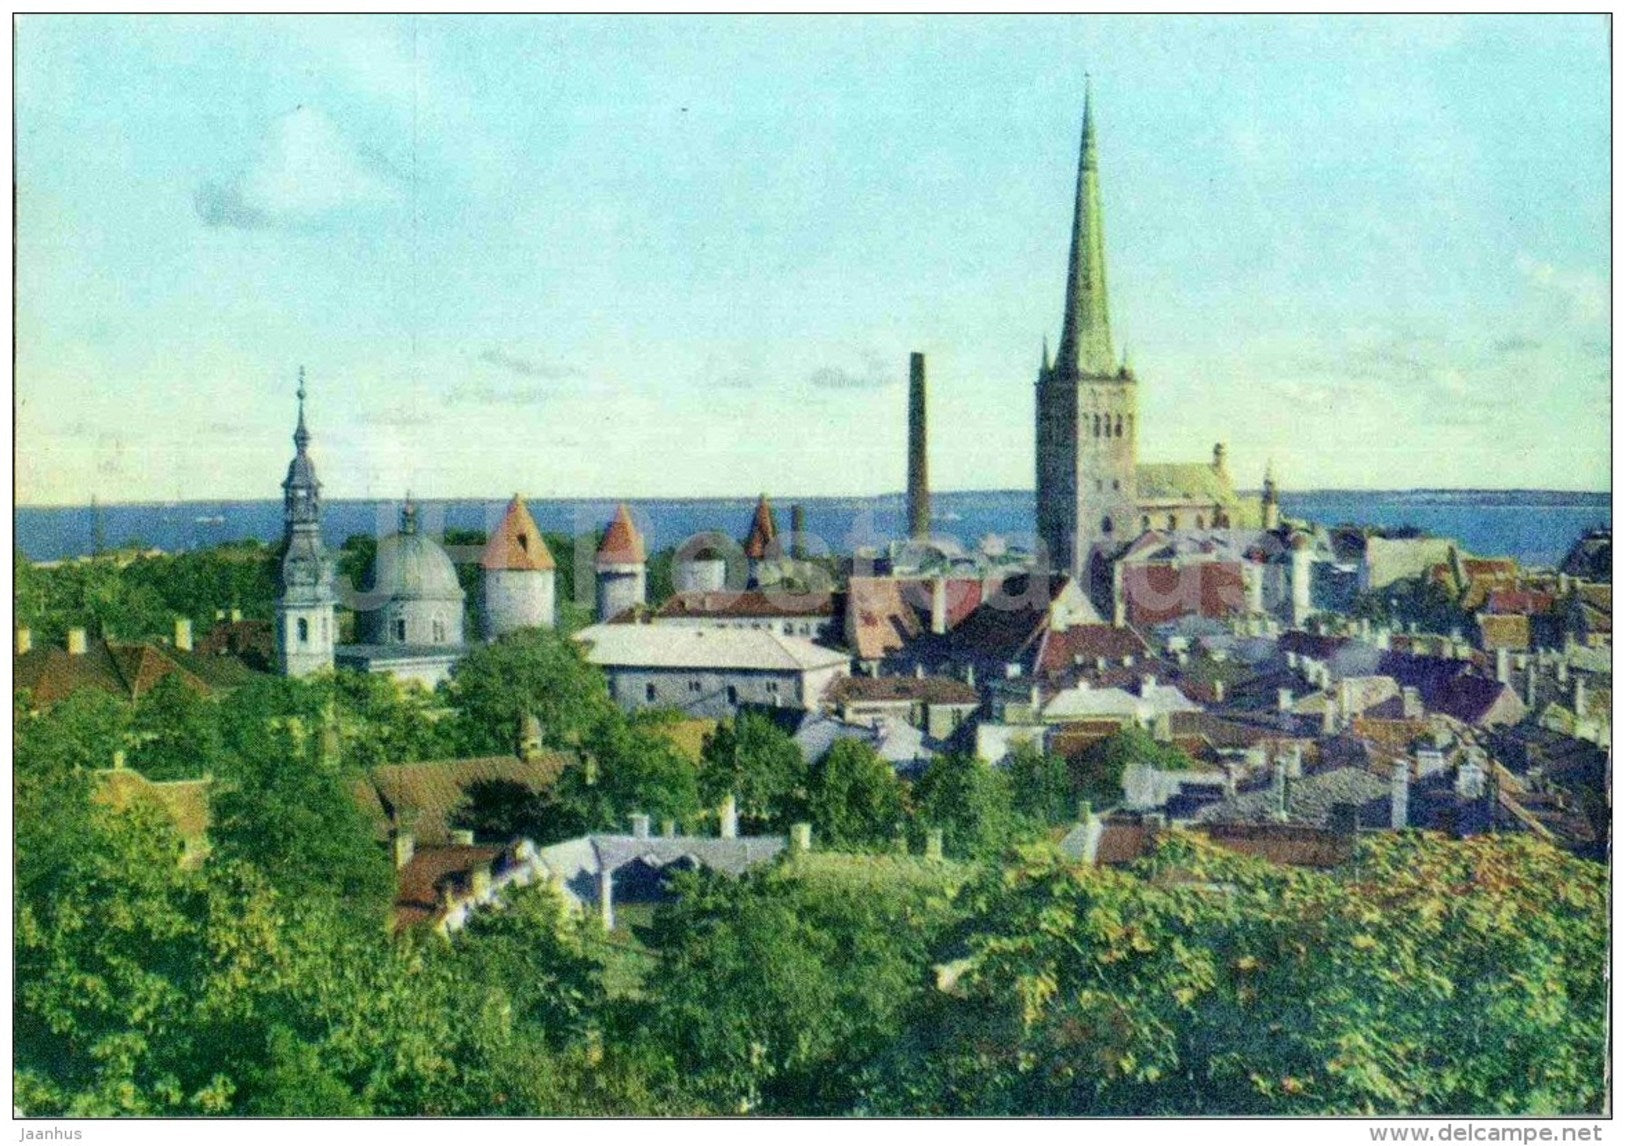 Spires of Tallinn Old Town - 1968 - Estonia USSR - unused - JH Postcards